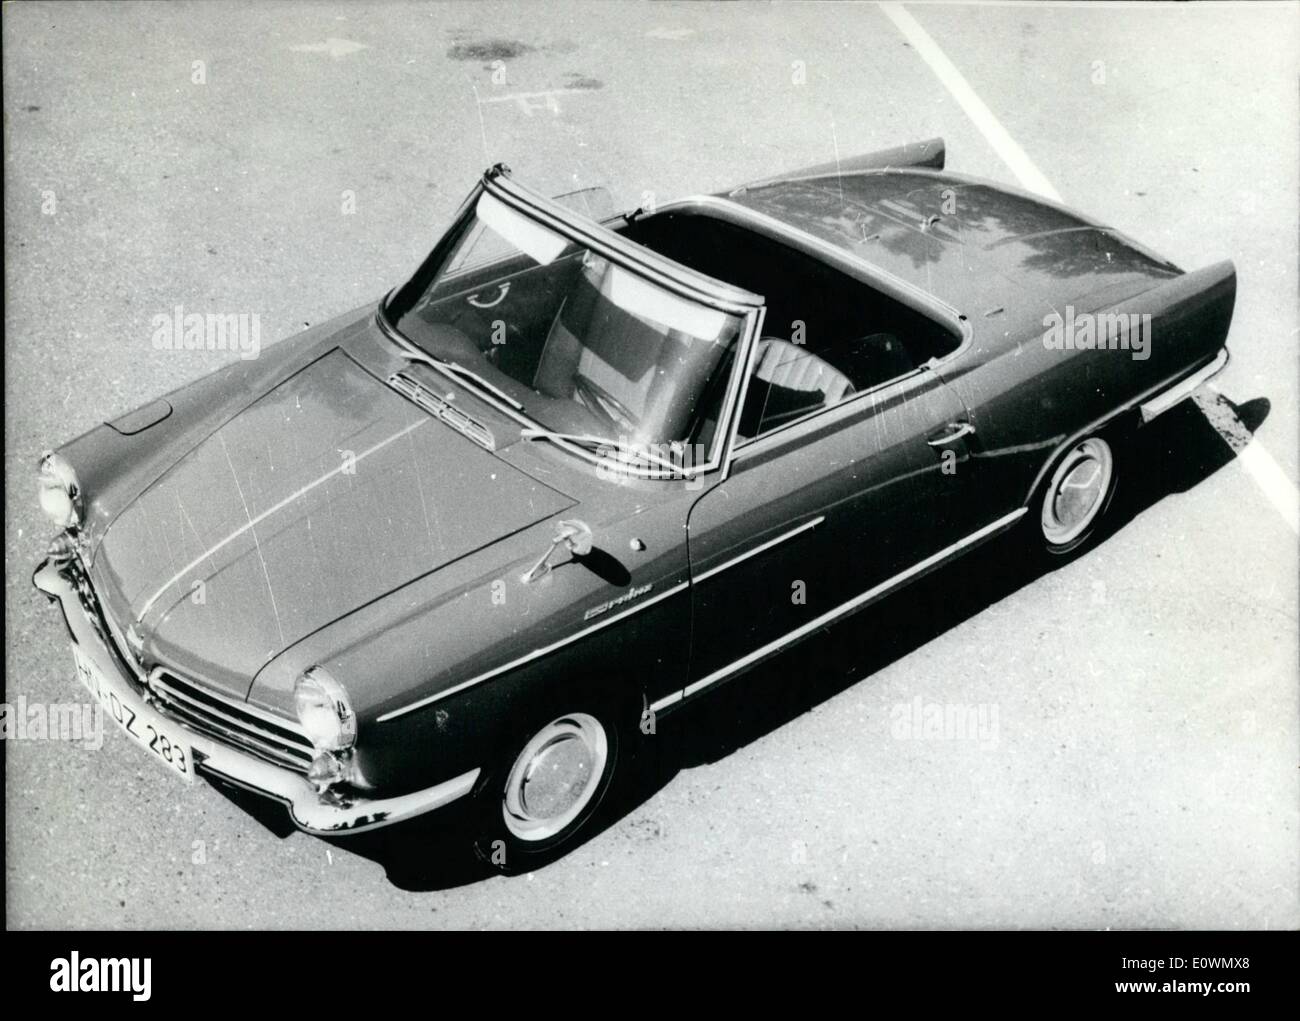 Sept. 09, 1963 - Morgen in Frankfurt: die internationale Auto-Ausstellung wird eröffnet morgen 12.9.63 in Frankfurt. Unter h Stockfoto